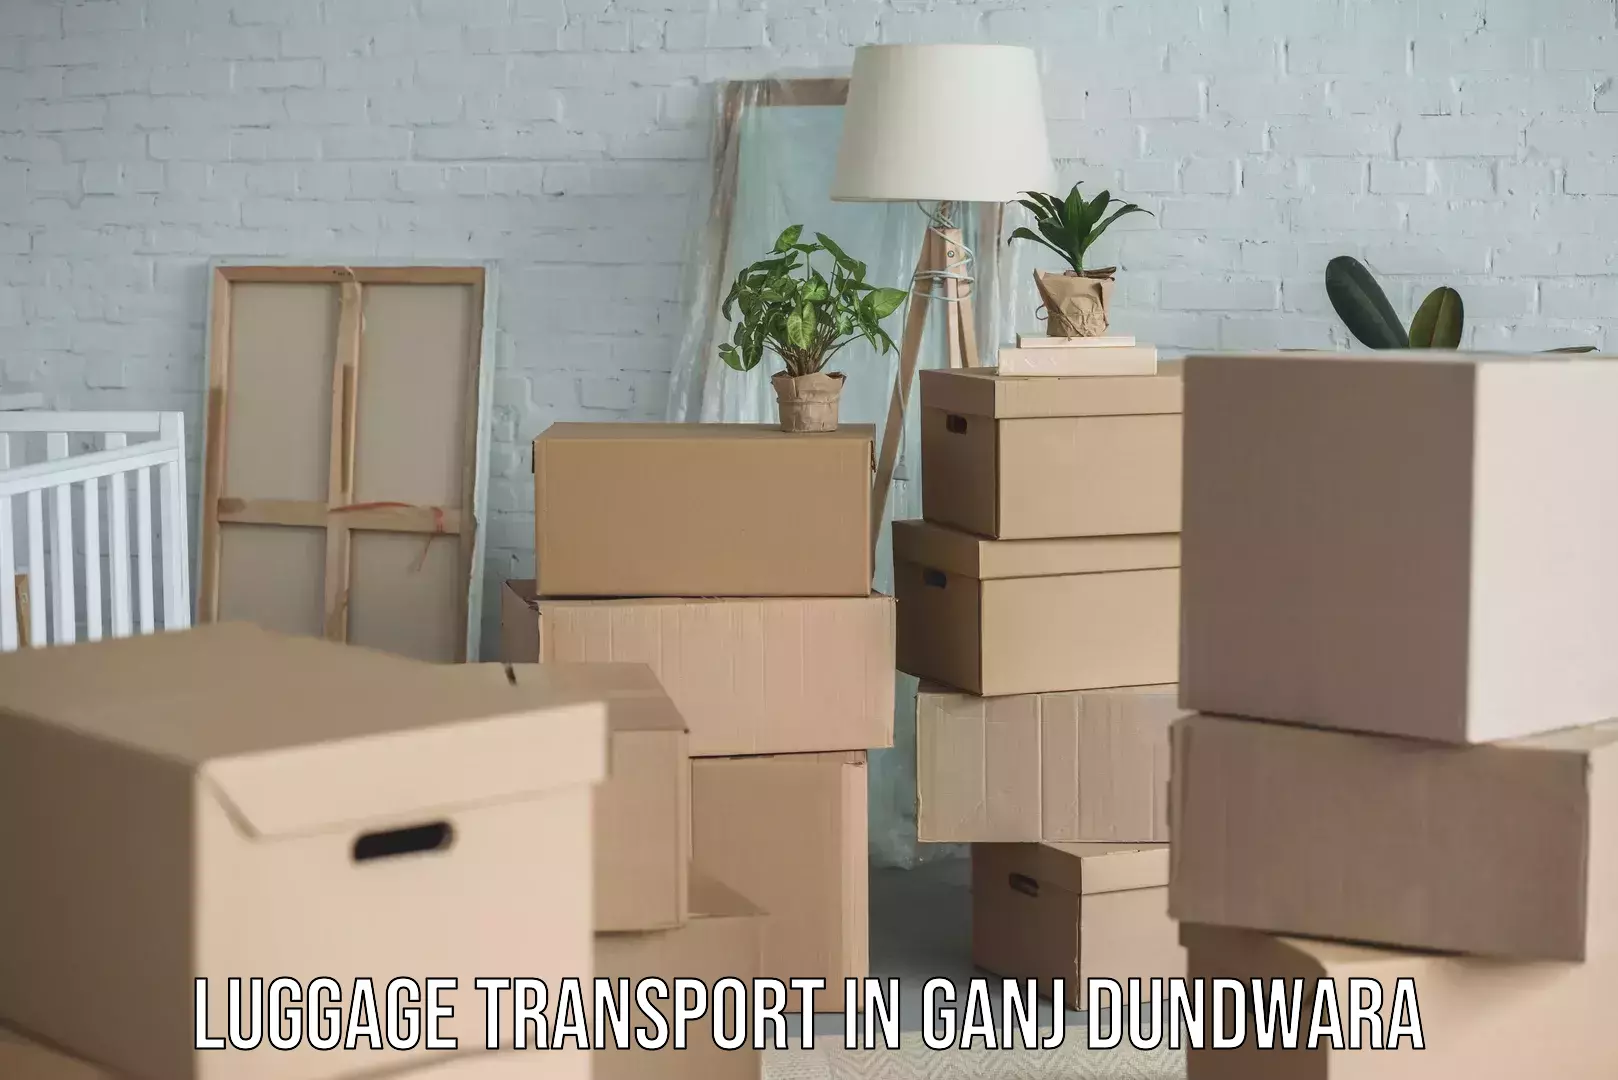 Luggage shipment tracking in Ganj Dundwara